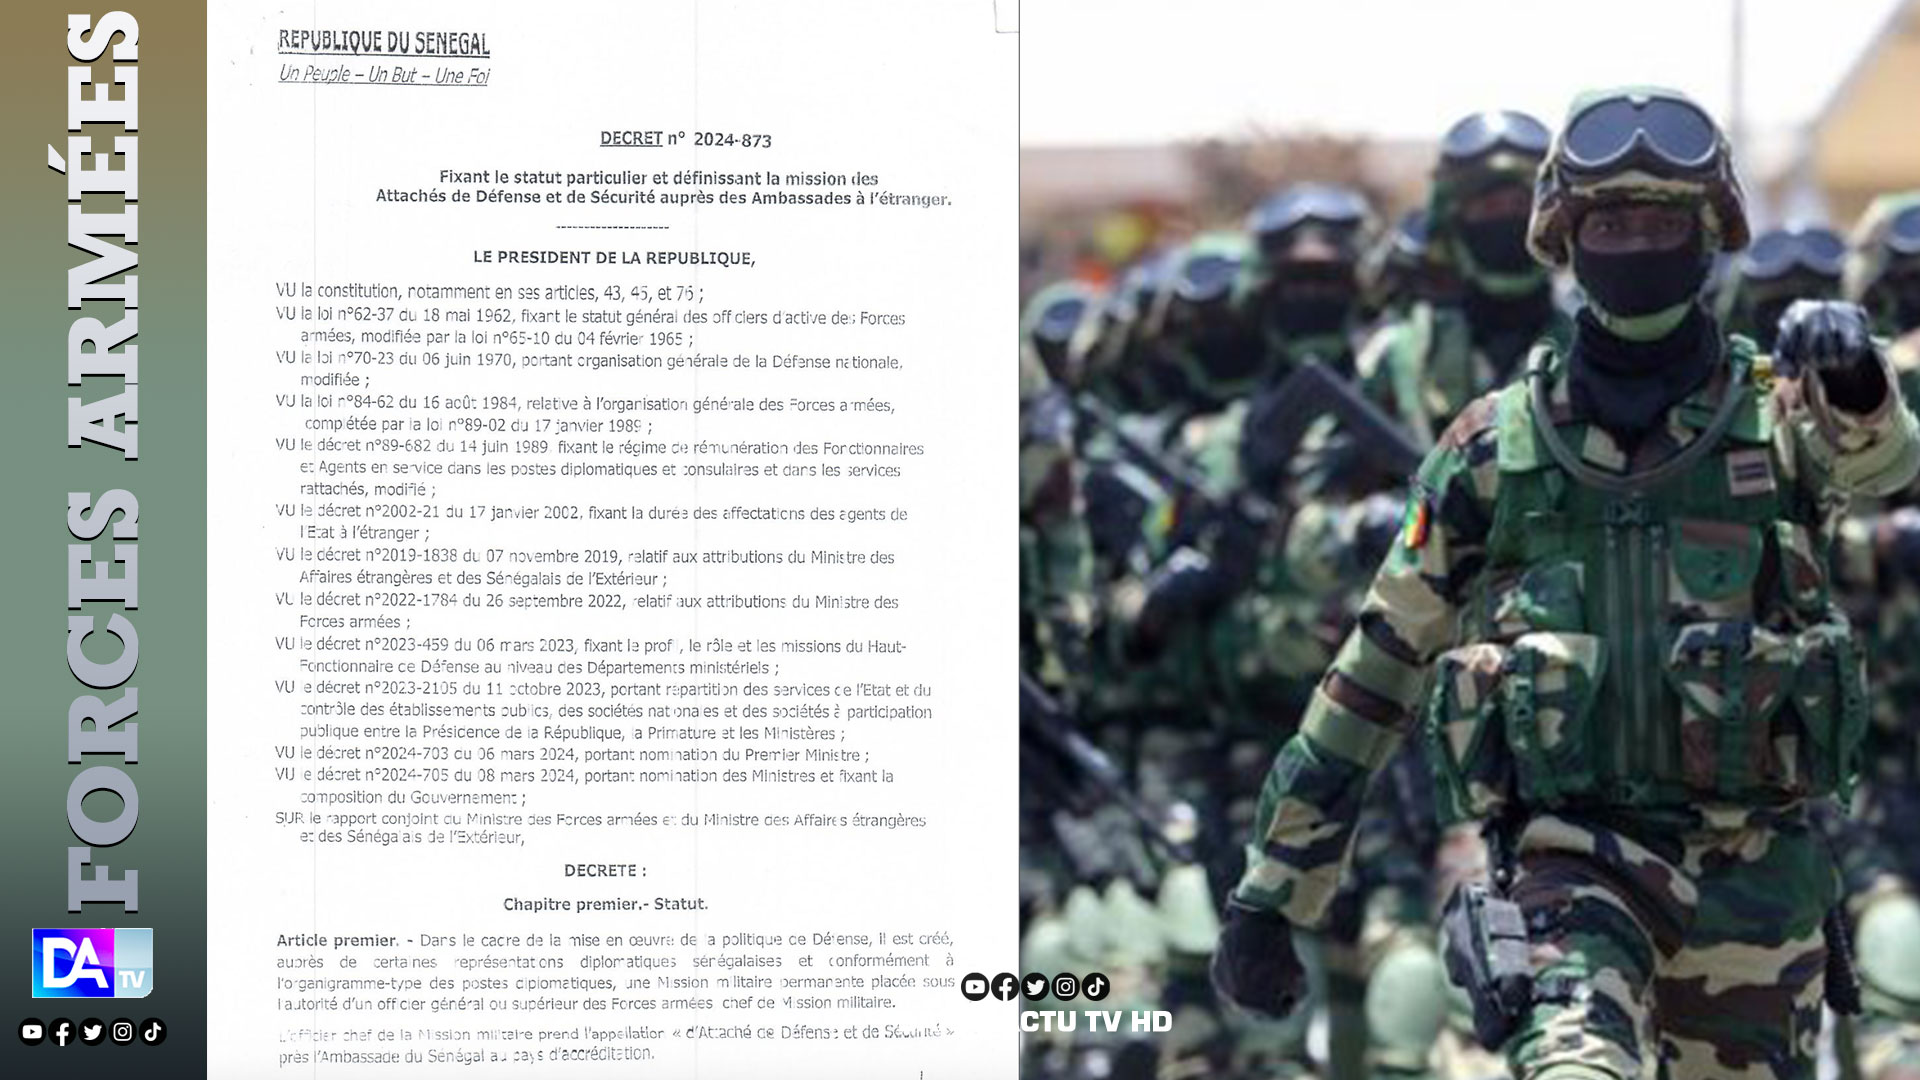 Armées: Zoom sur le rôle et la mission de l'Attaché de Défense et de Sécurité auprès des Ambassades